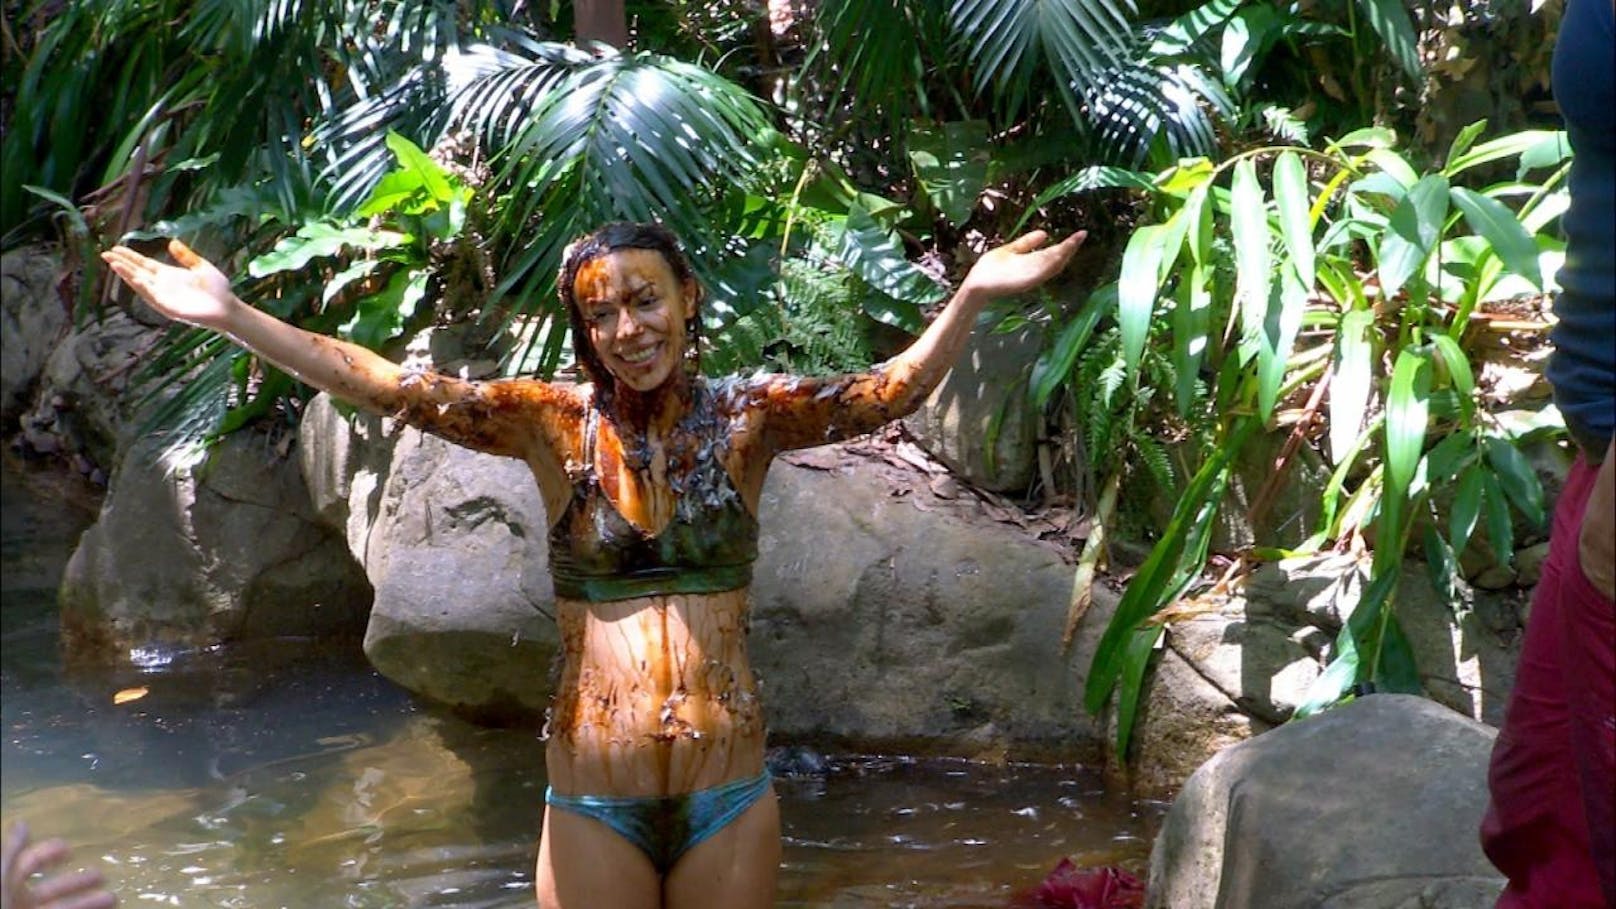 Geteert und gefedert kehrt Gisele Oppermann nach ihrer erfolgreichen Dschungelprüfung stolz ins Camp zurück und wäscht sich im Teich.